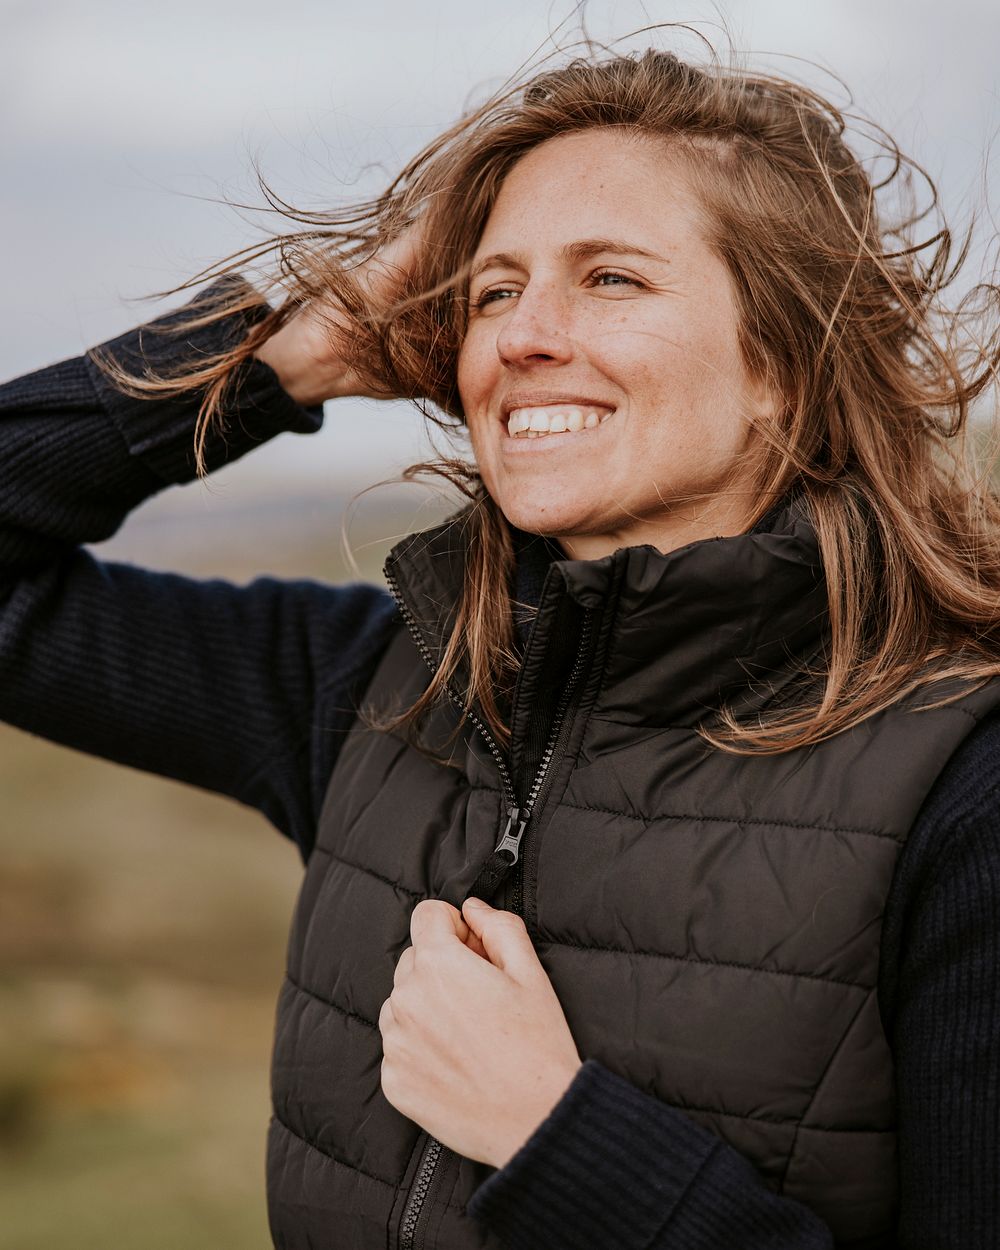 Smiling woman wearing black jacket photo